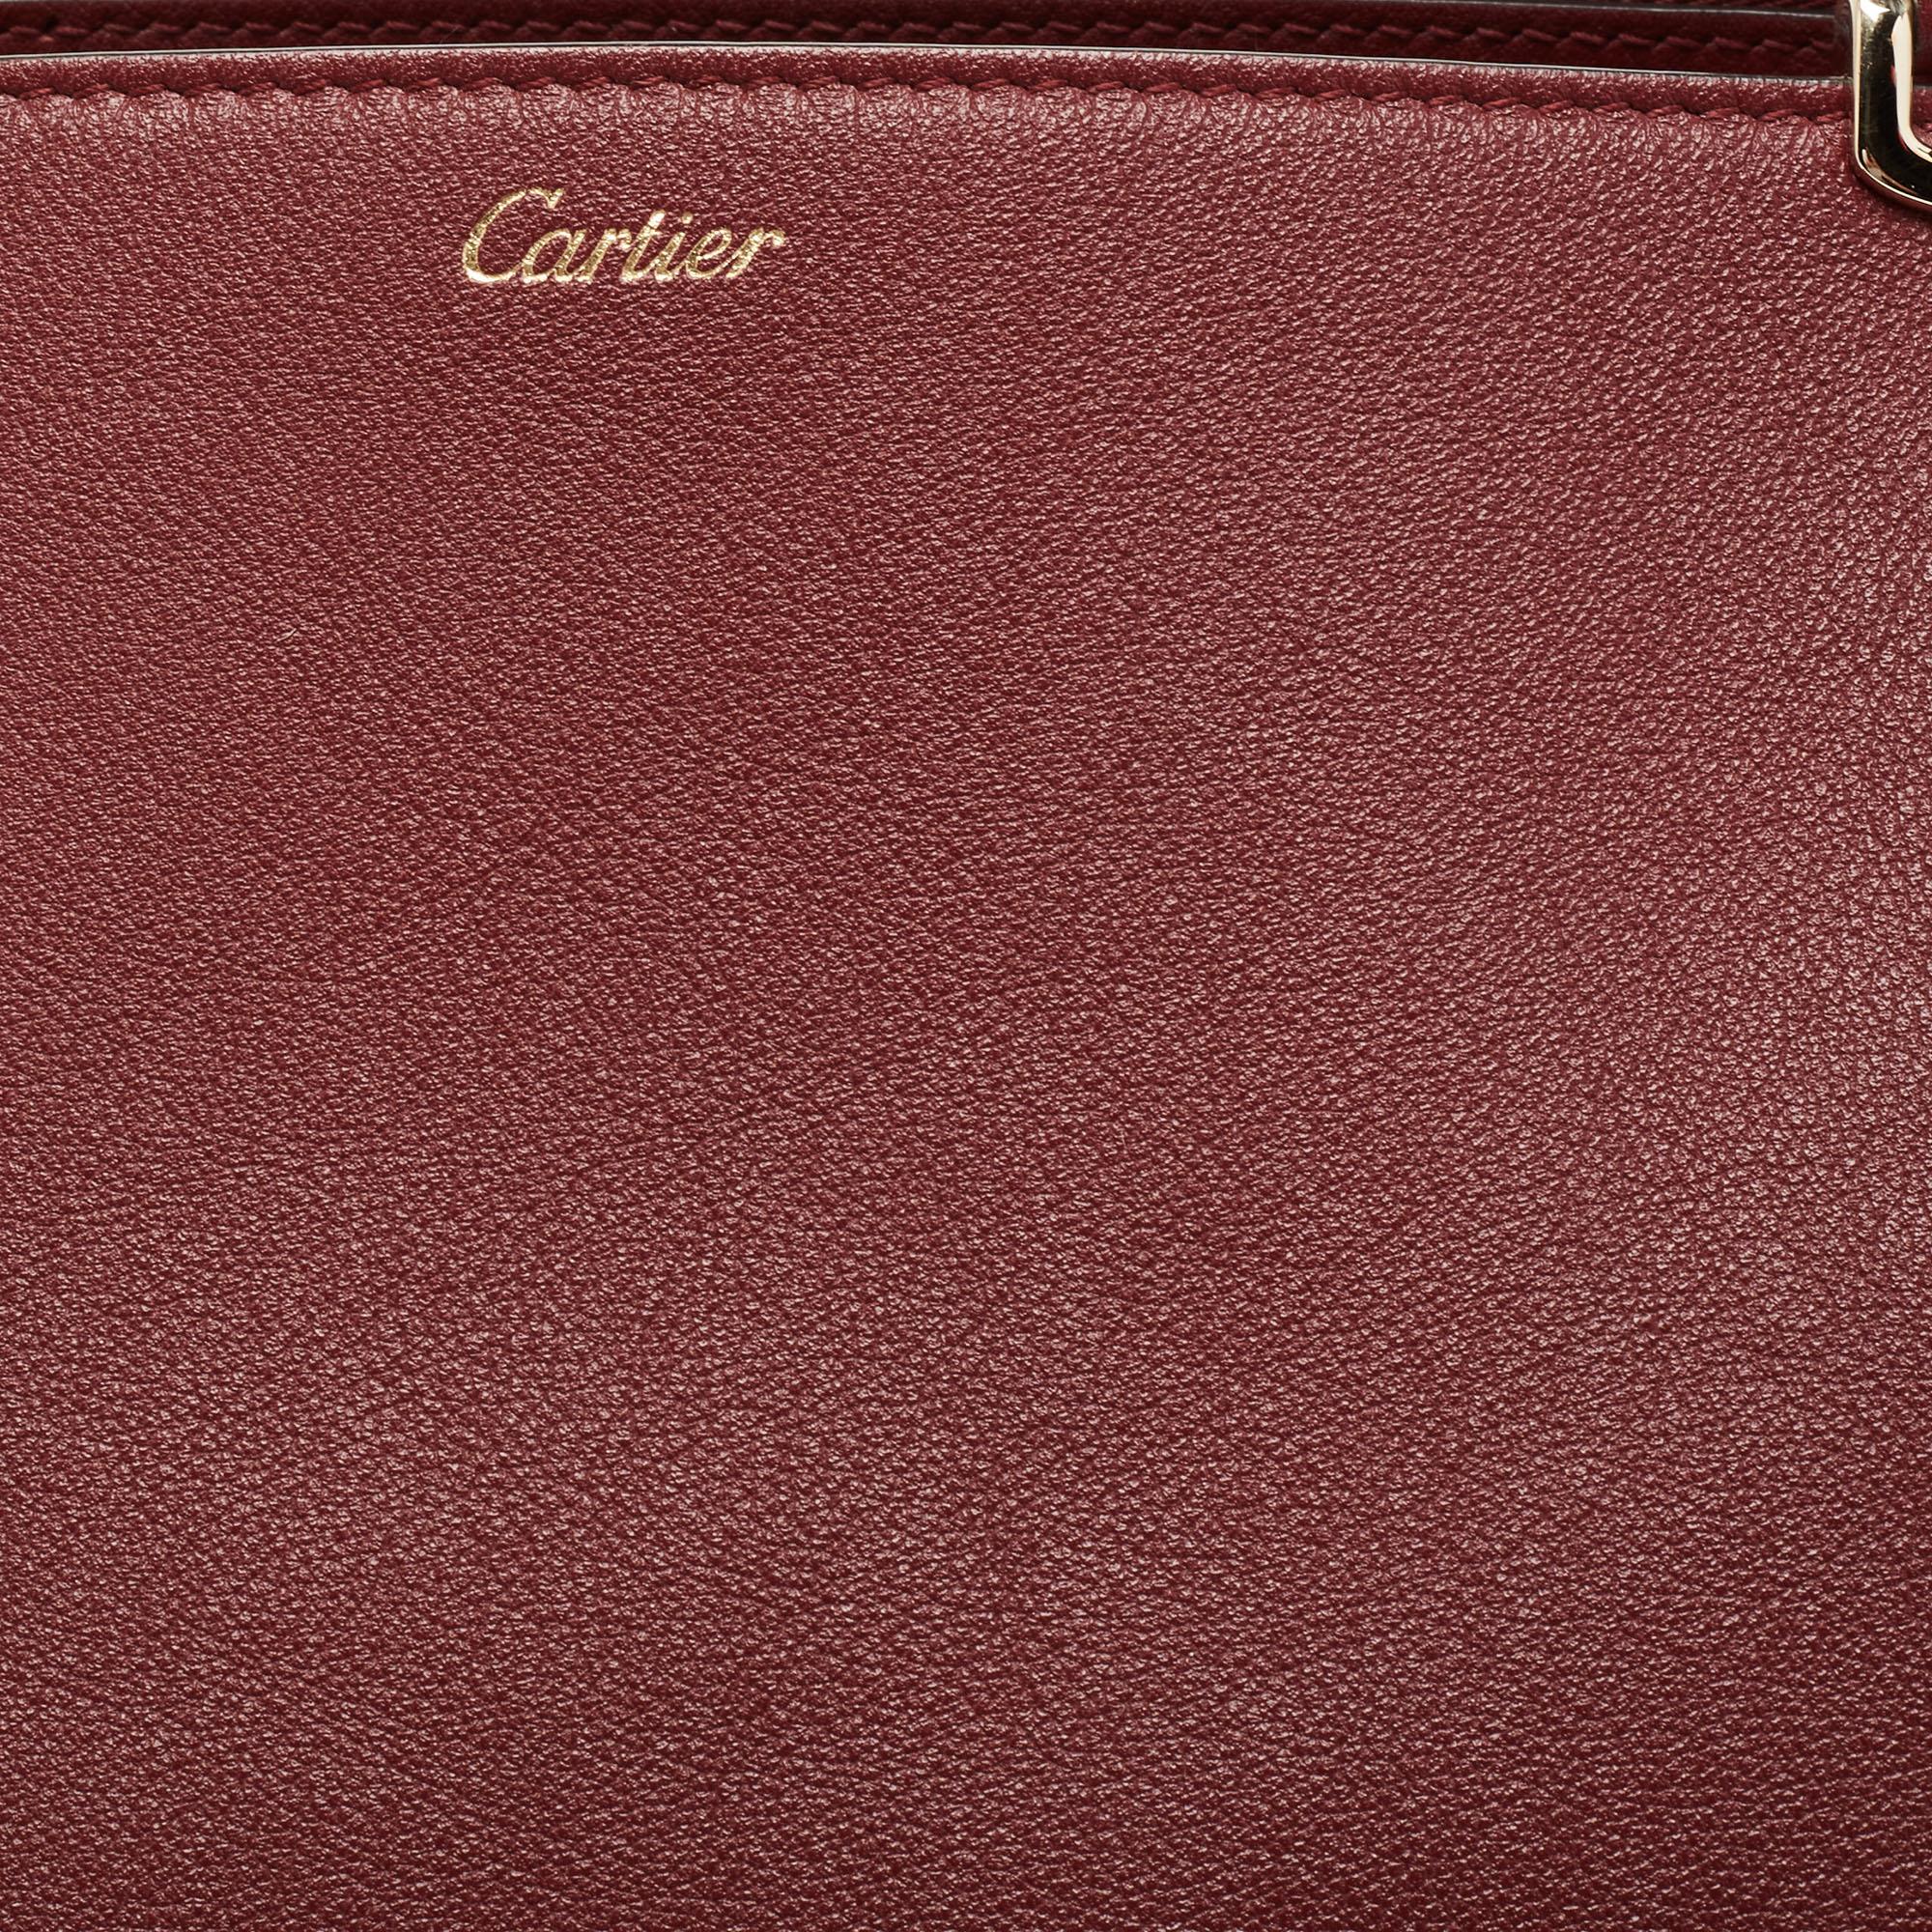 Cartier Maroon Leather Medium C De Cartier Satchel 4